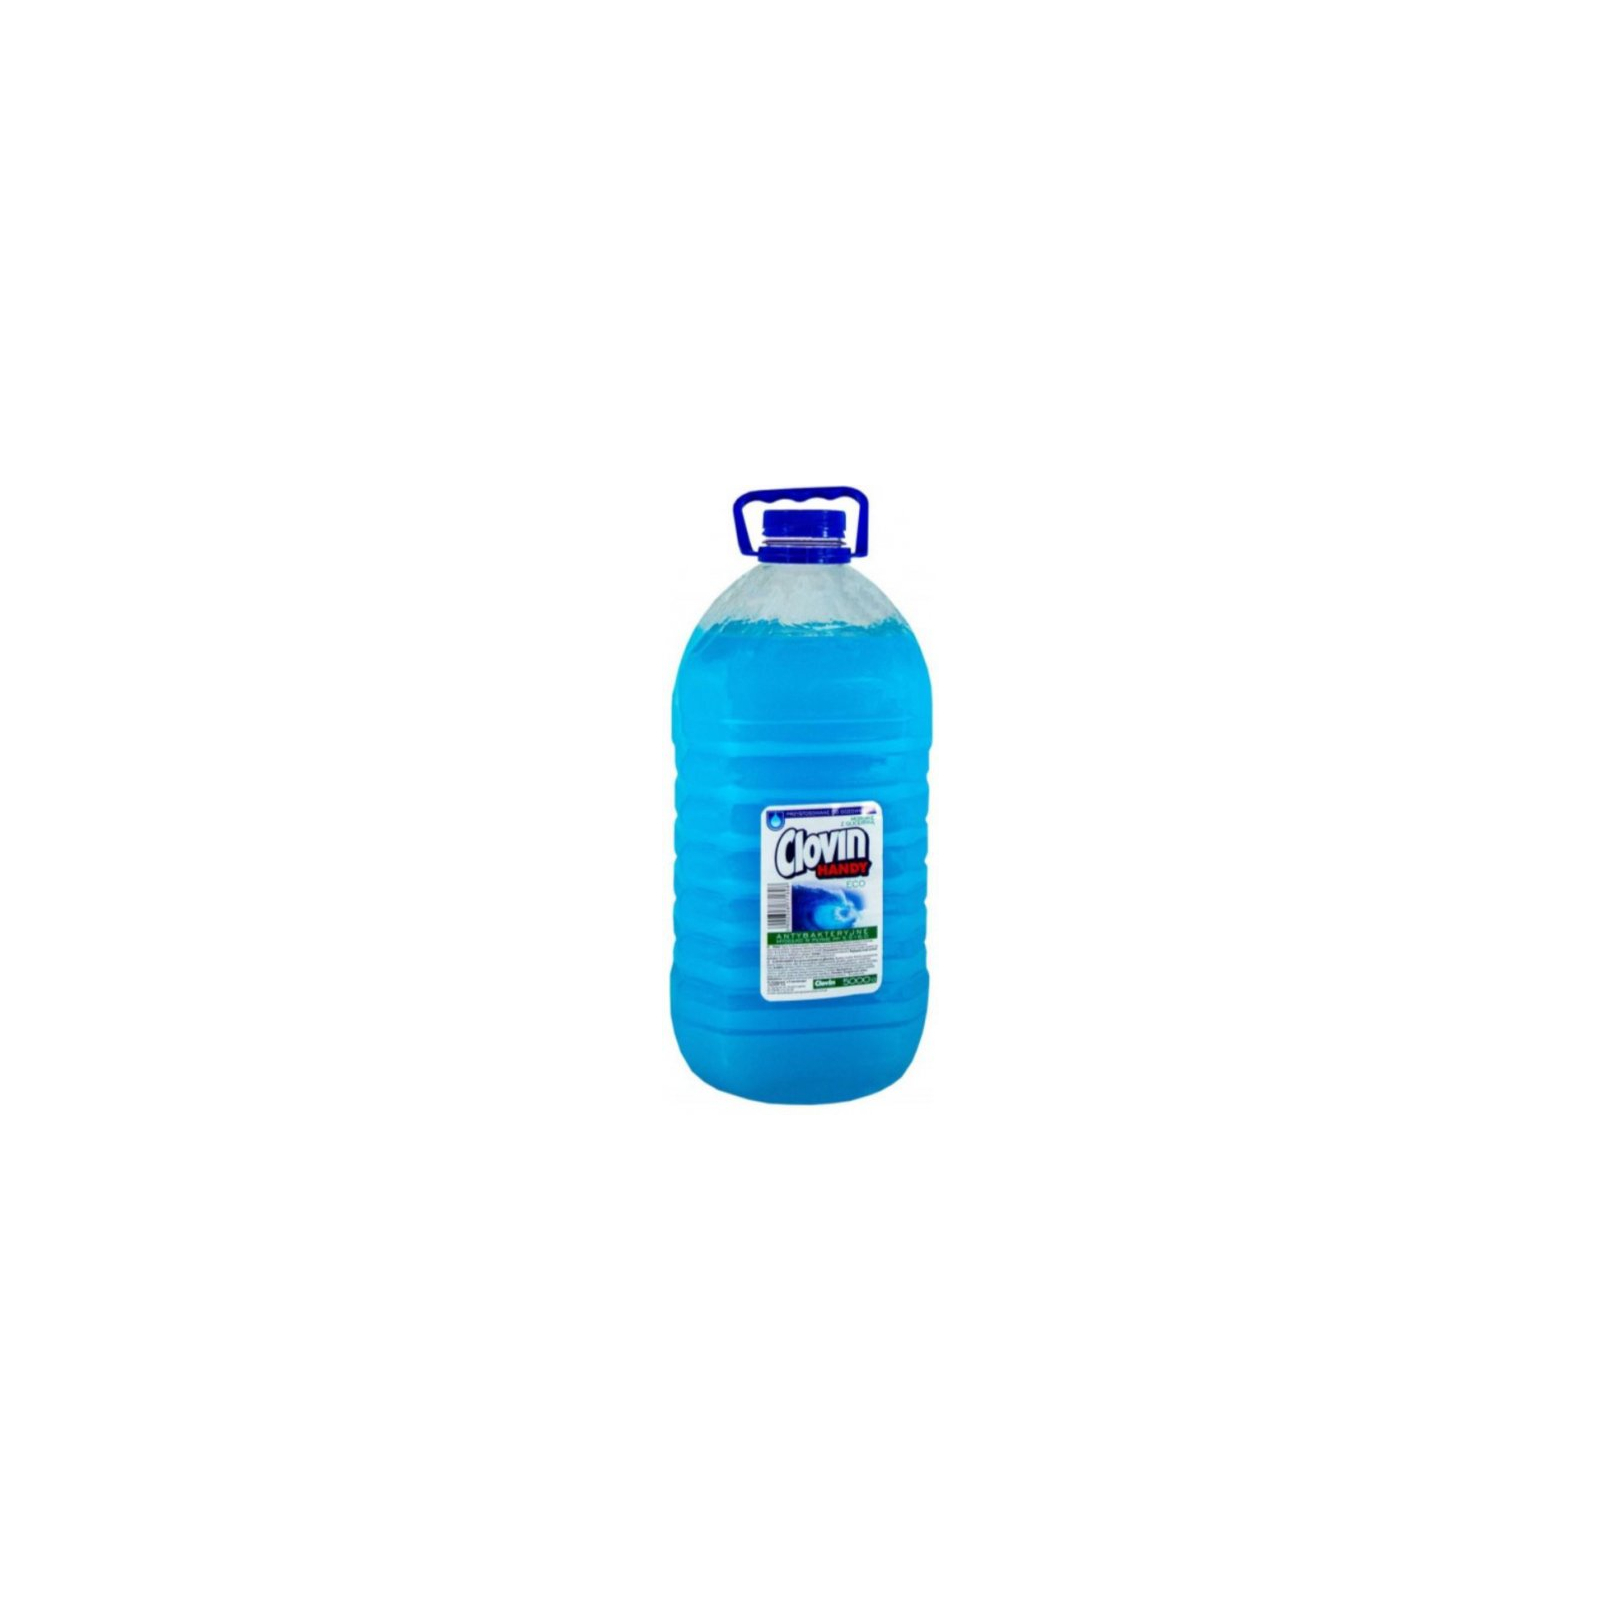 Жидкое мыло Clovin Handy Morskie с Глицерином 5 л (5900308771808)